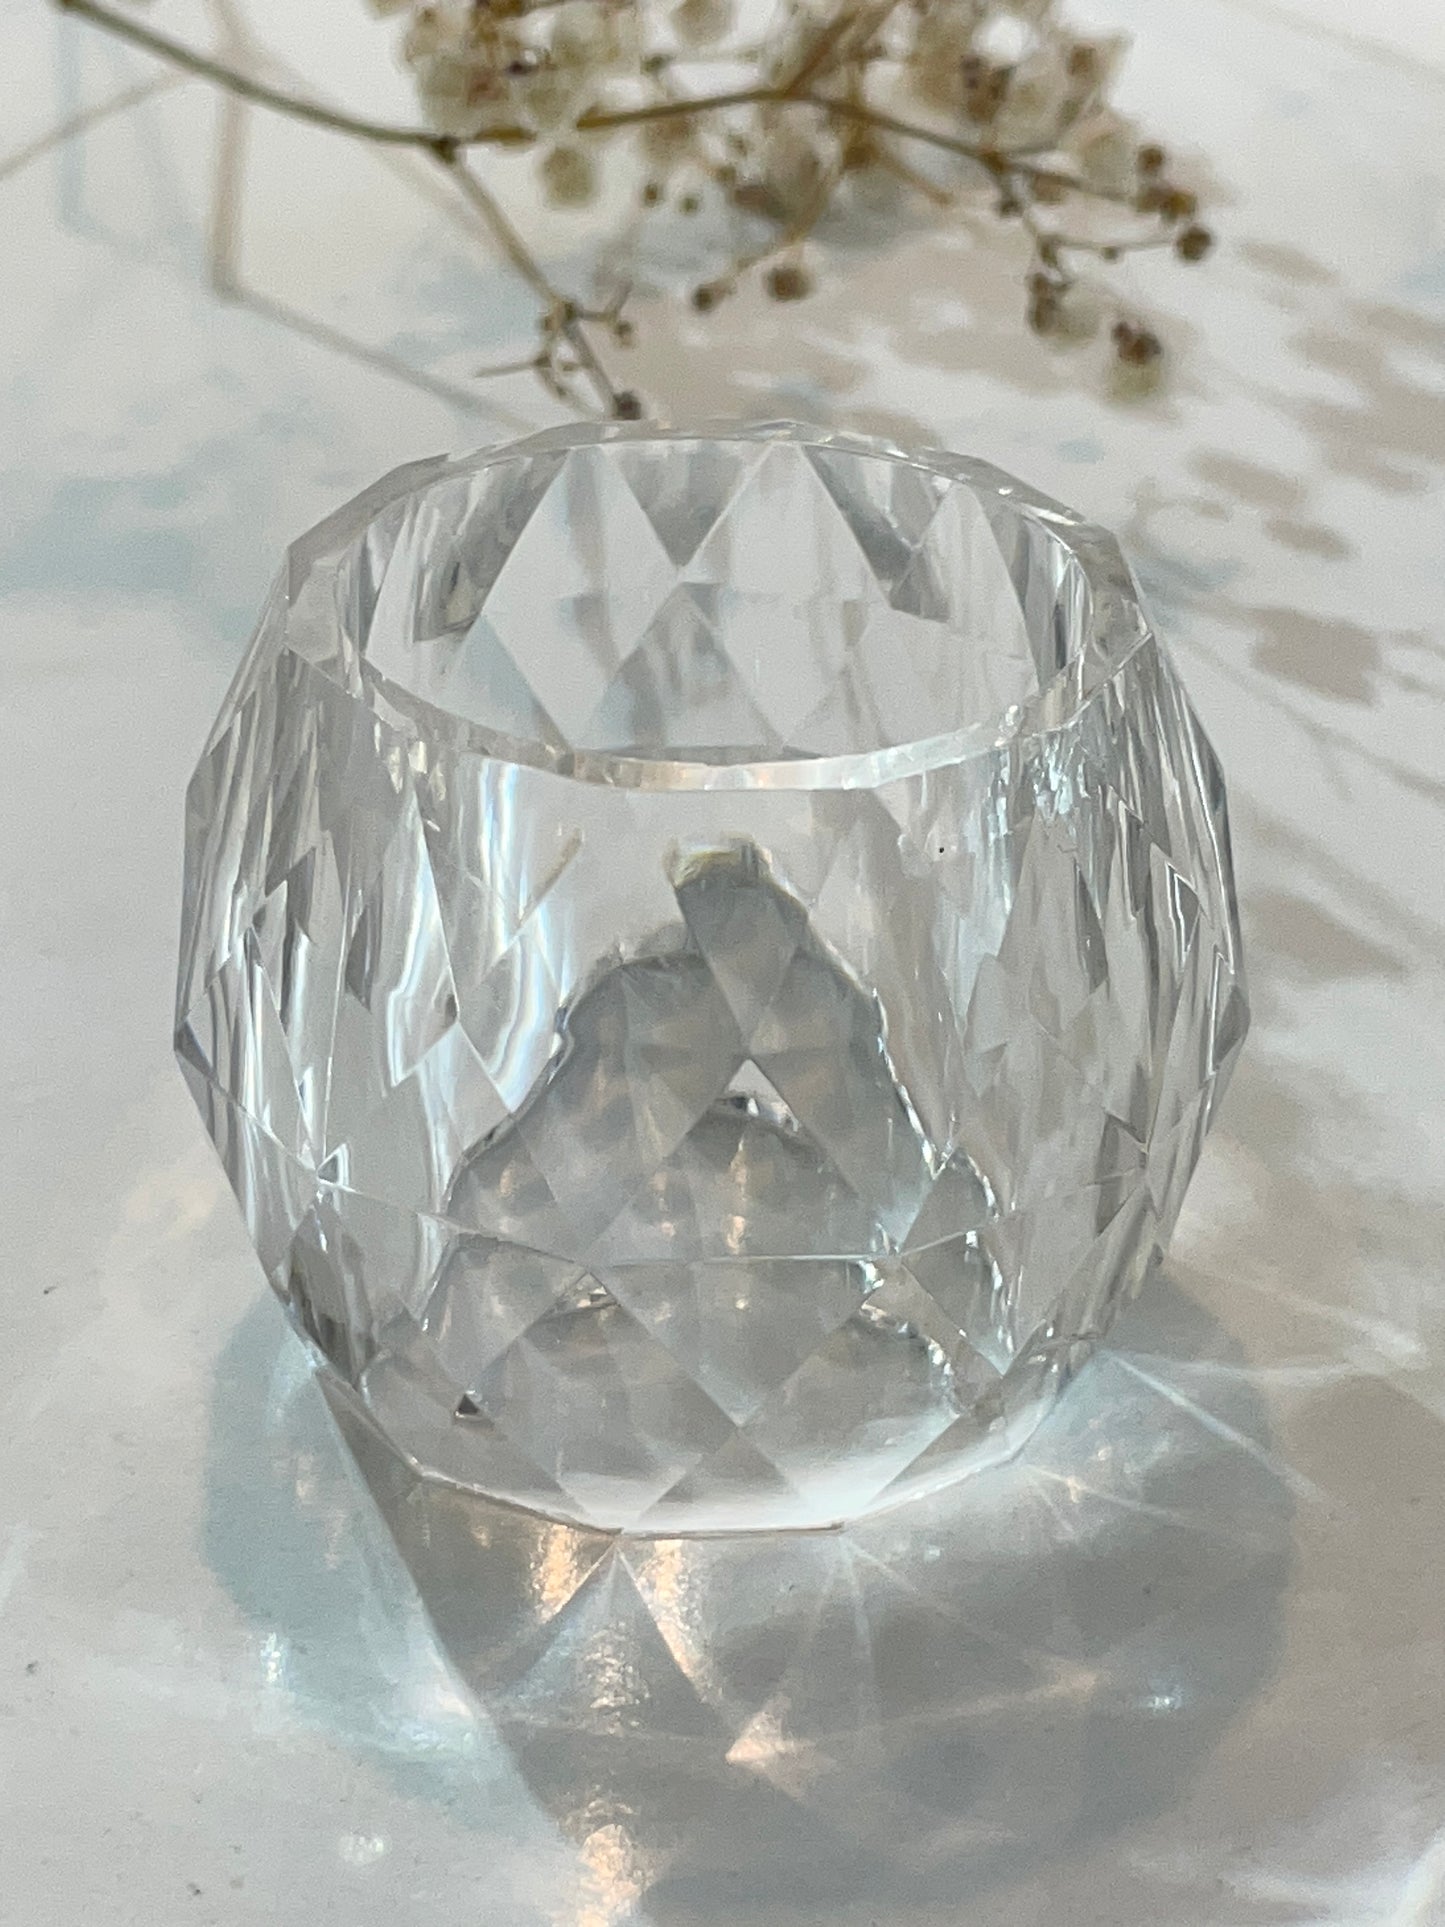 Kristallring-Servietten: Silikonform für elegante Tischdekoration